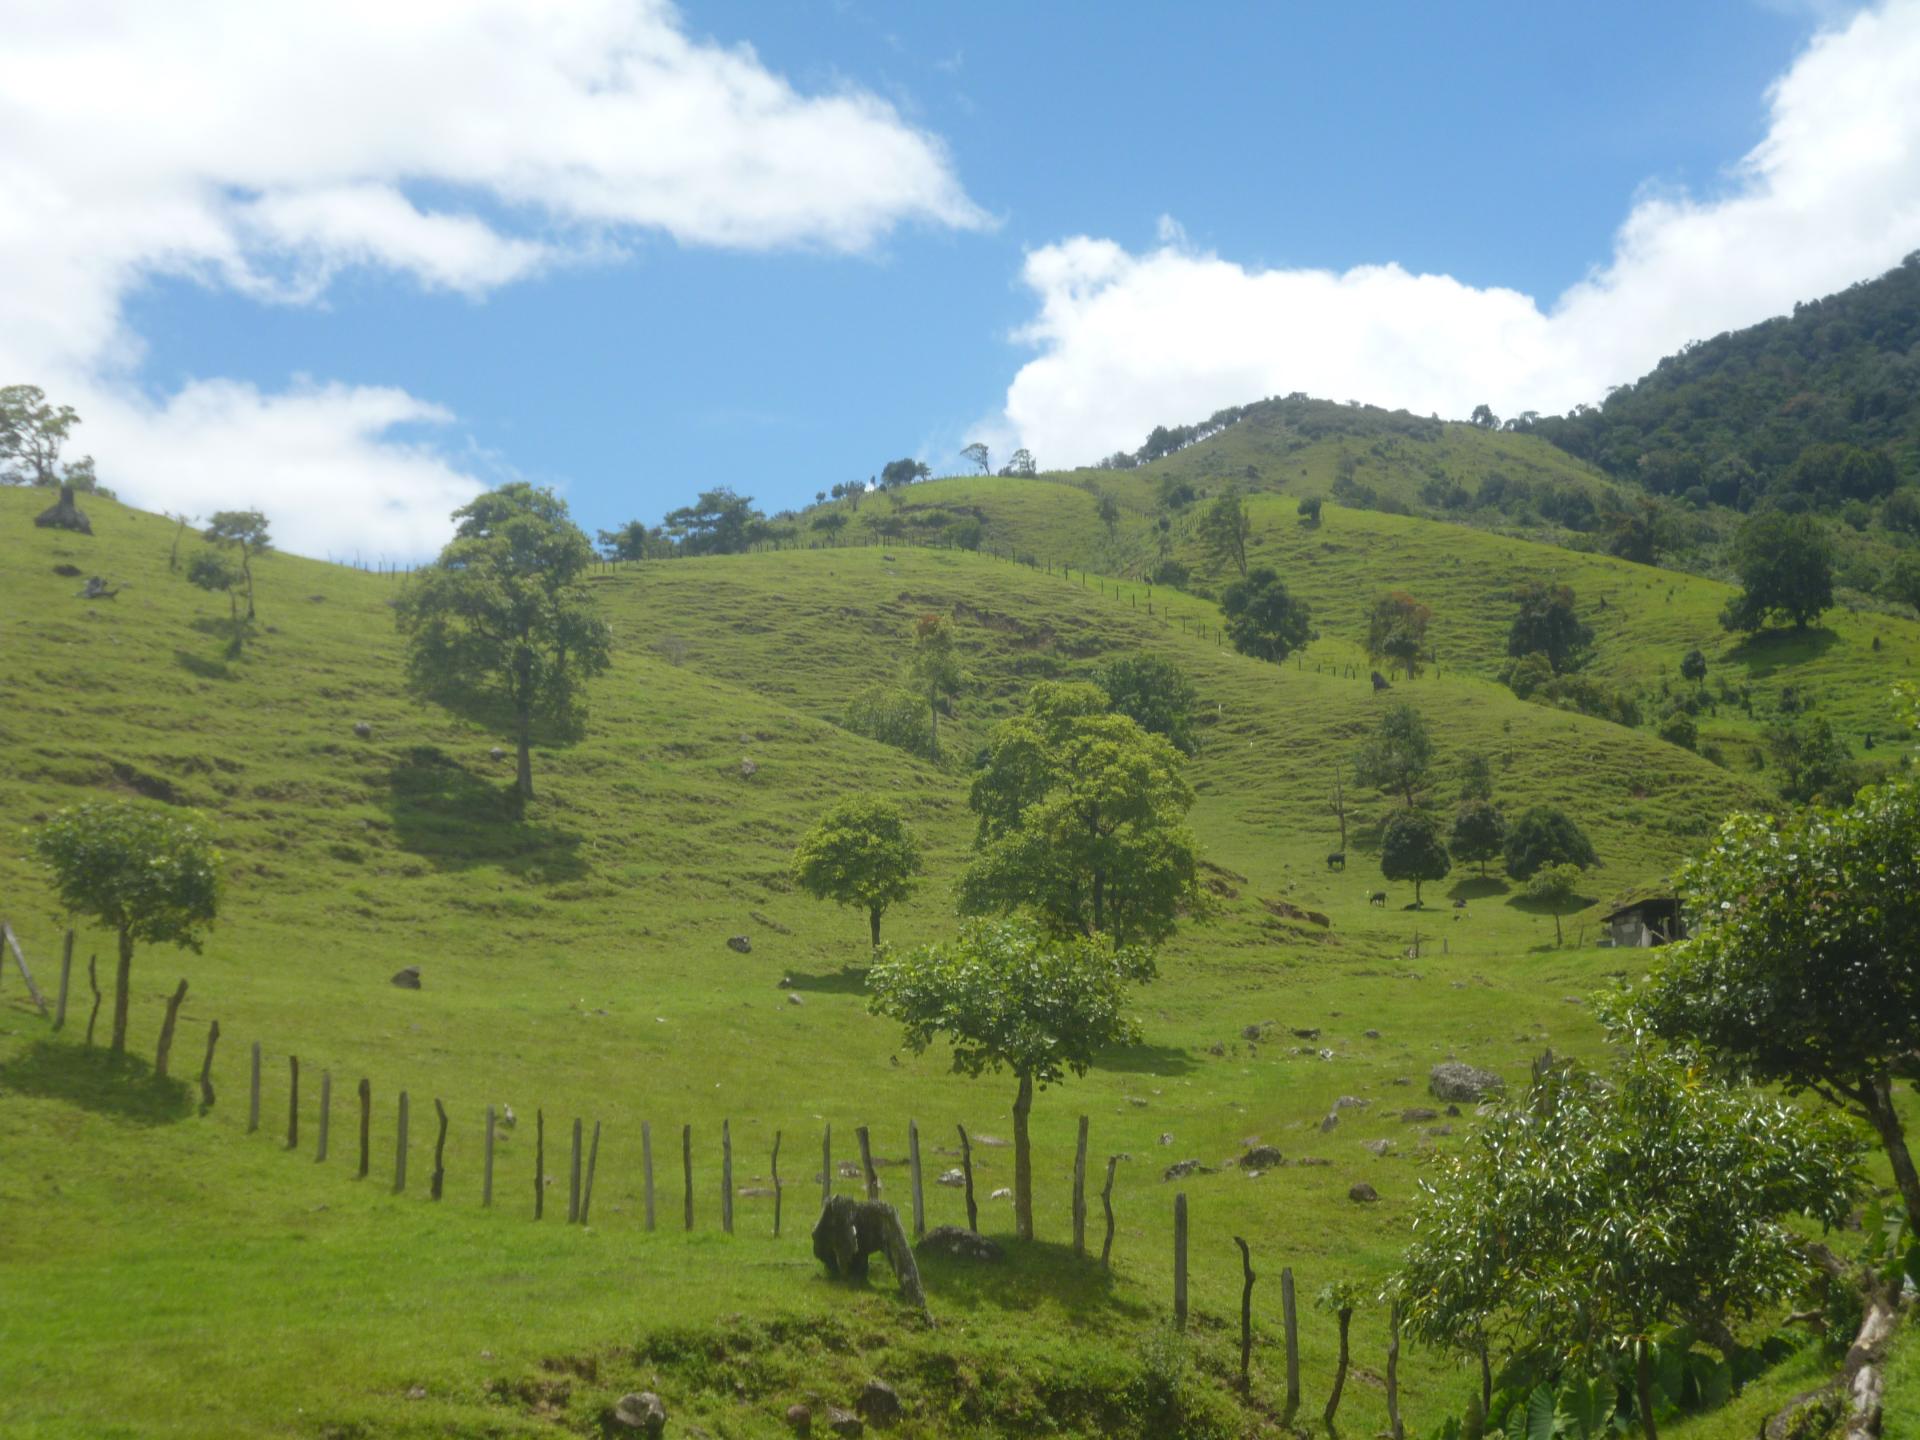 CHIRIQUI, DISTRITO DE TIERRAS ALTAS (HIGHLANDS DISTRICT), FARM LOCATED IN VOLCAN.